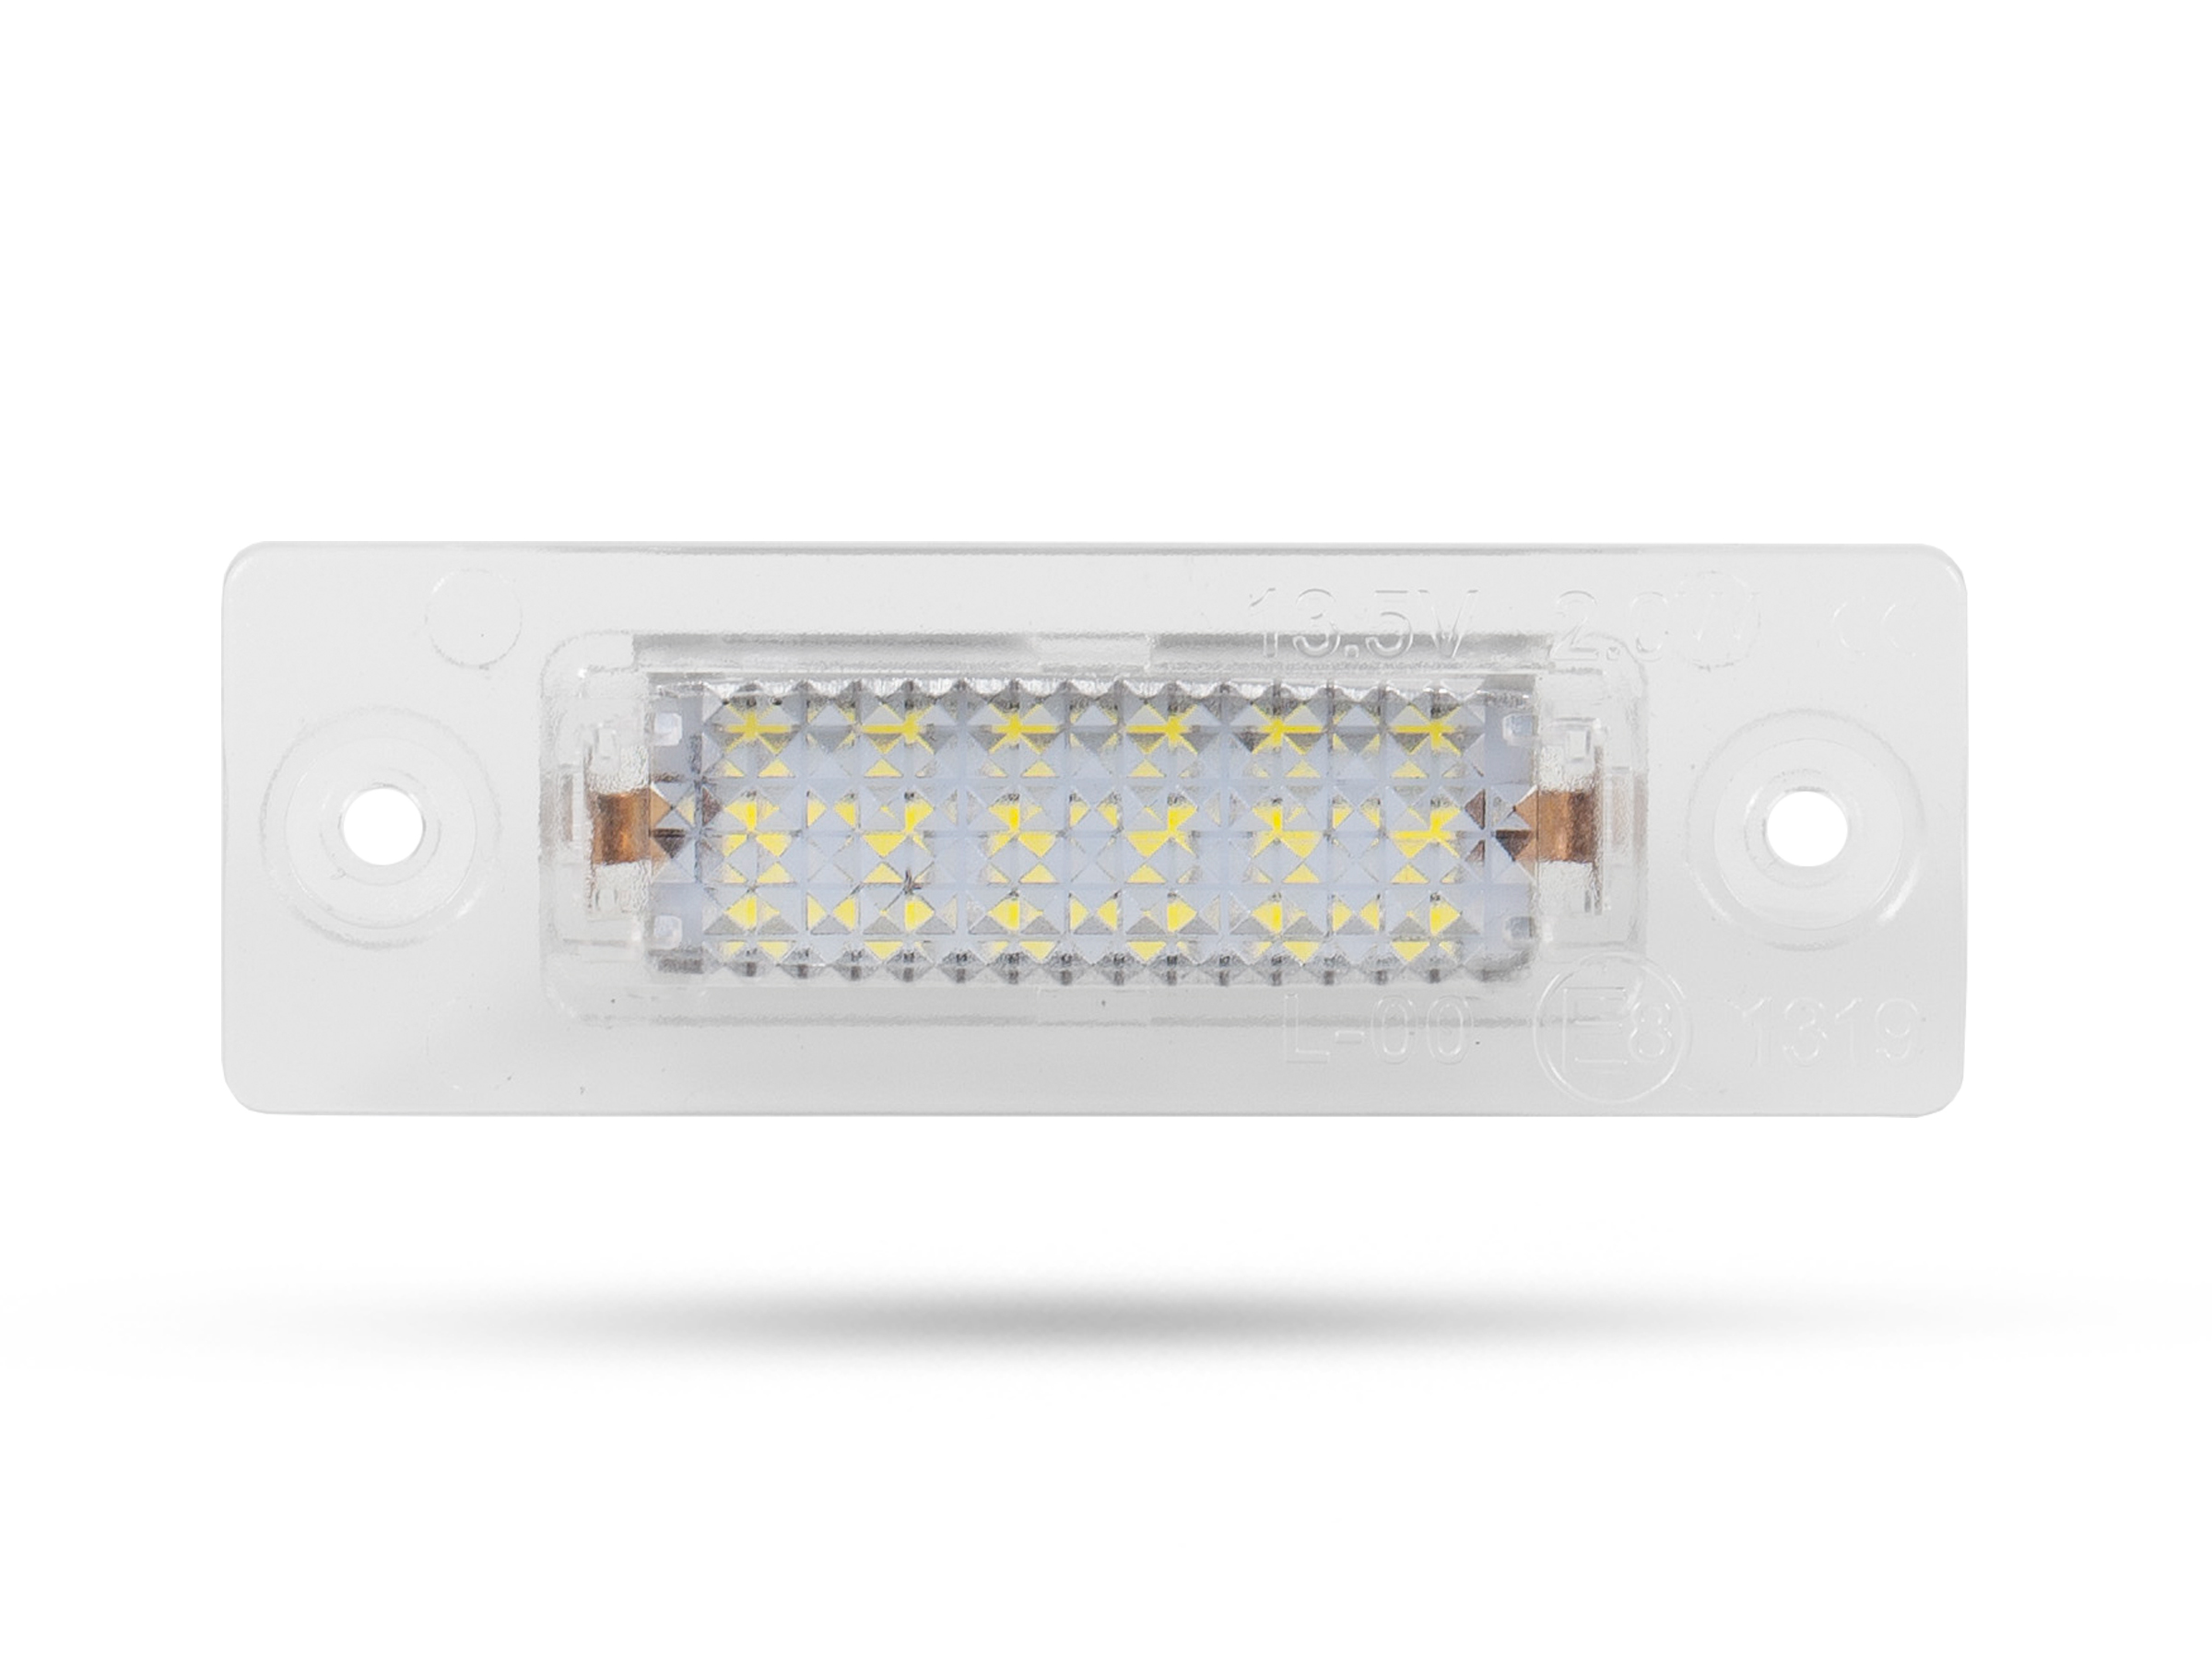 LED Kennzeichenbeleuchtung Module VW Caddy Bj.04-14, mit E